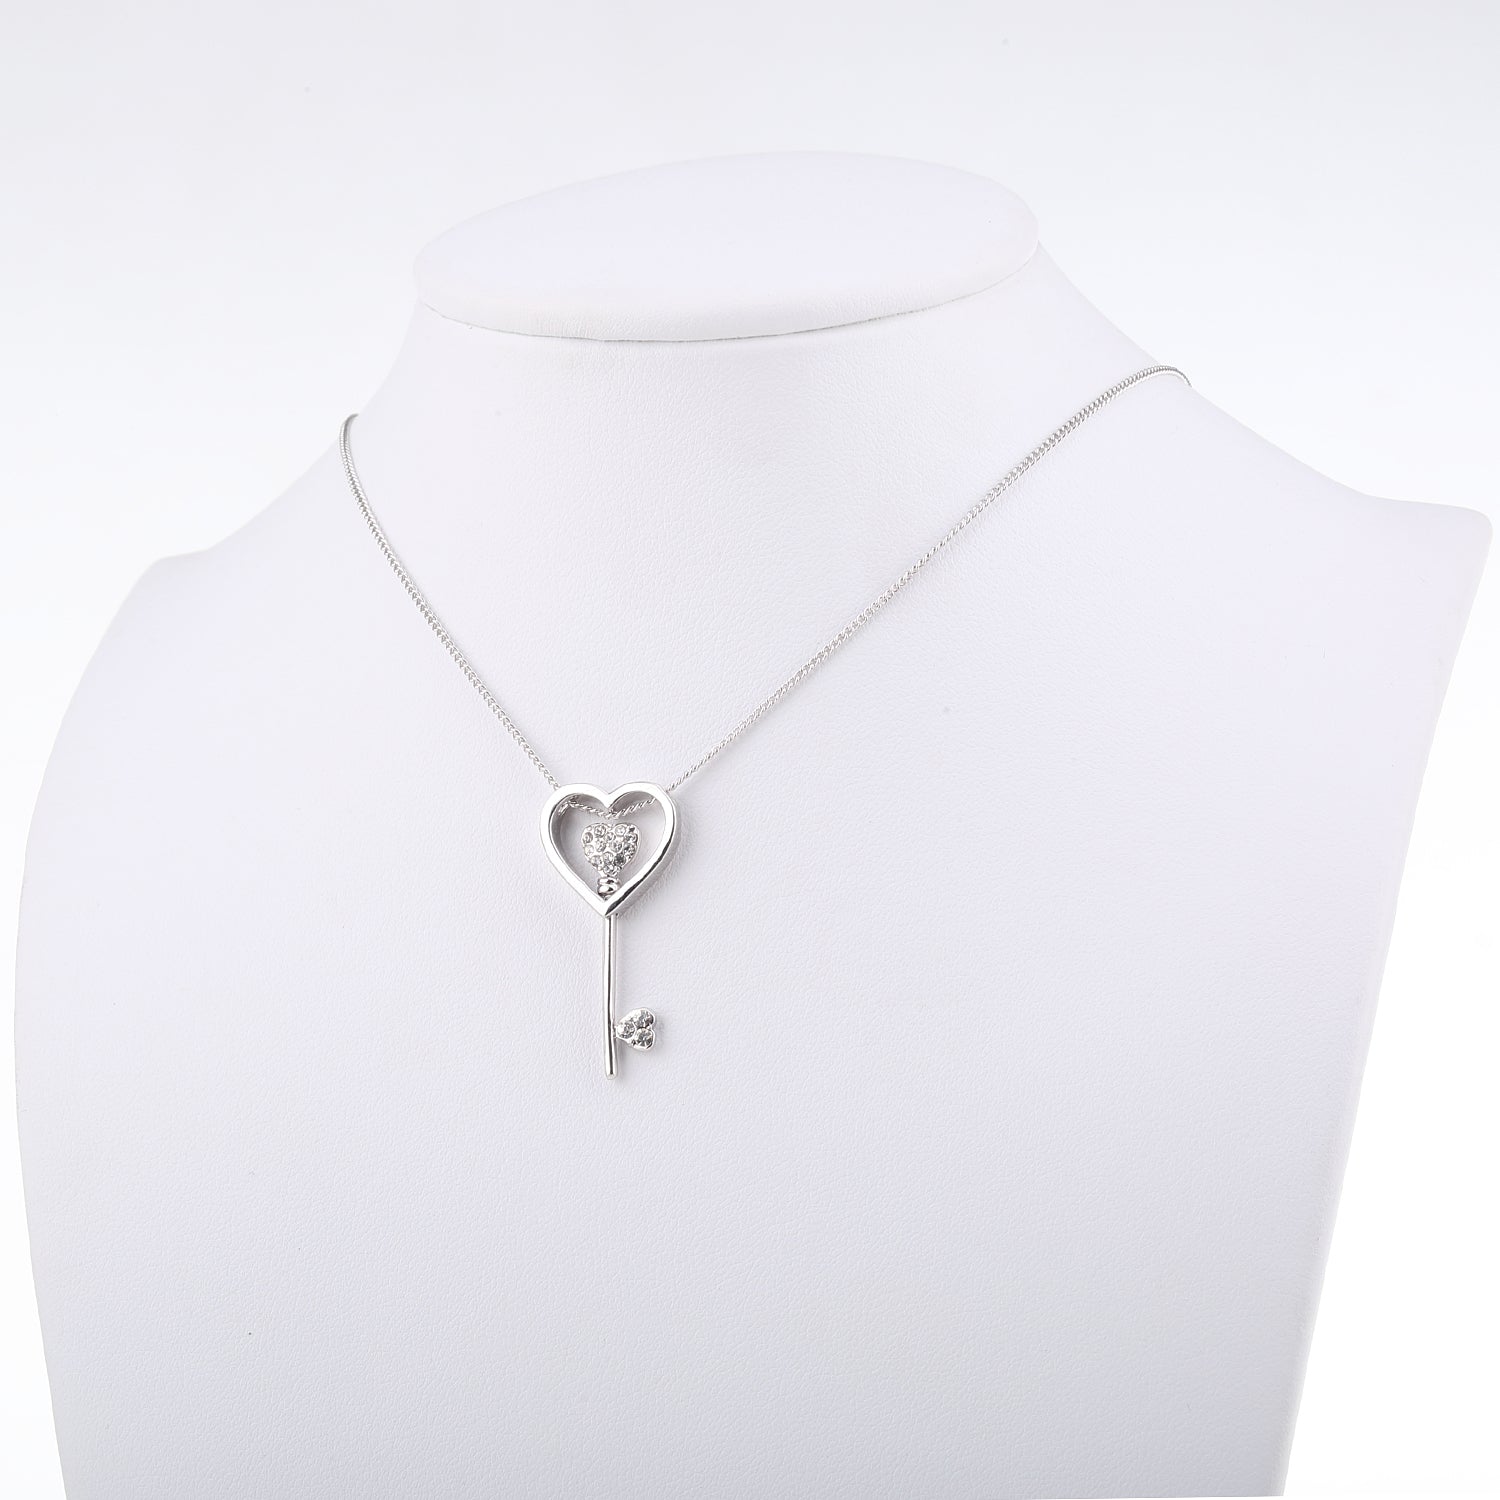 Dazzlor Swarovski Crystal Necklace set for women and girls